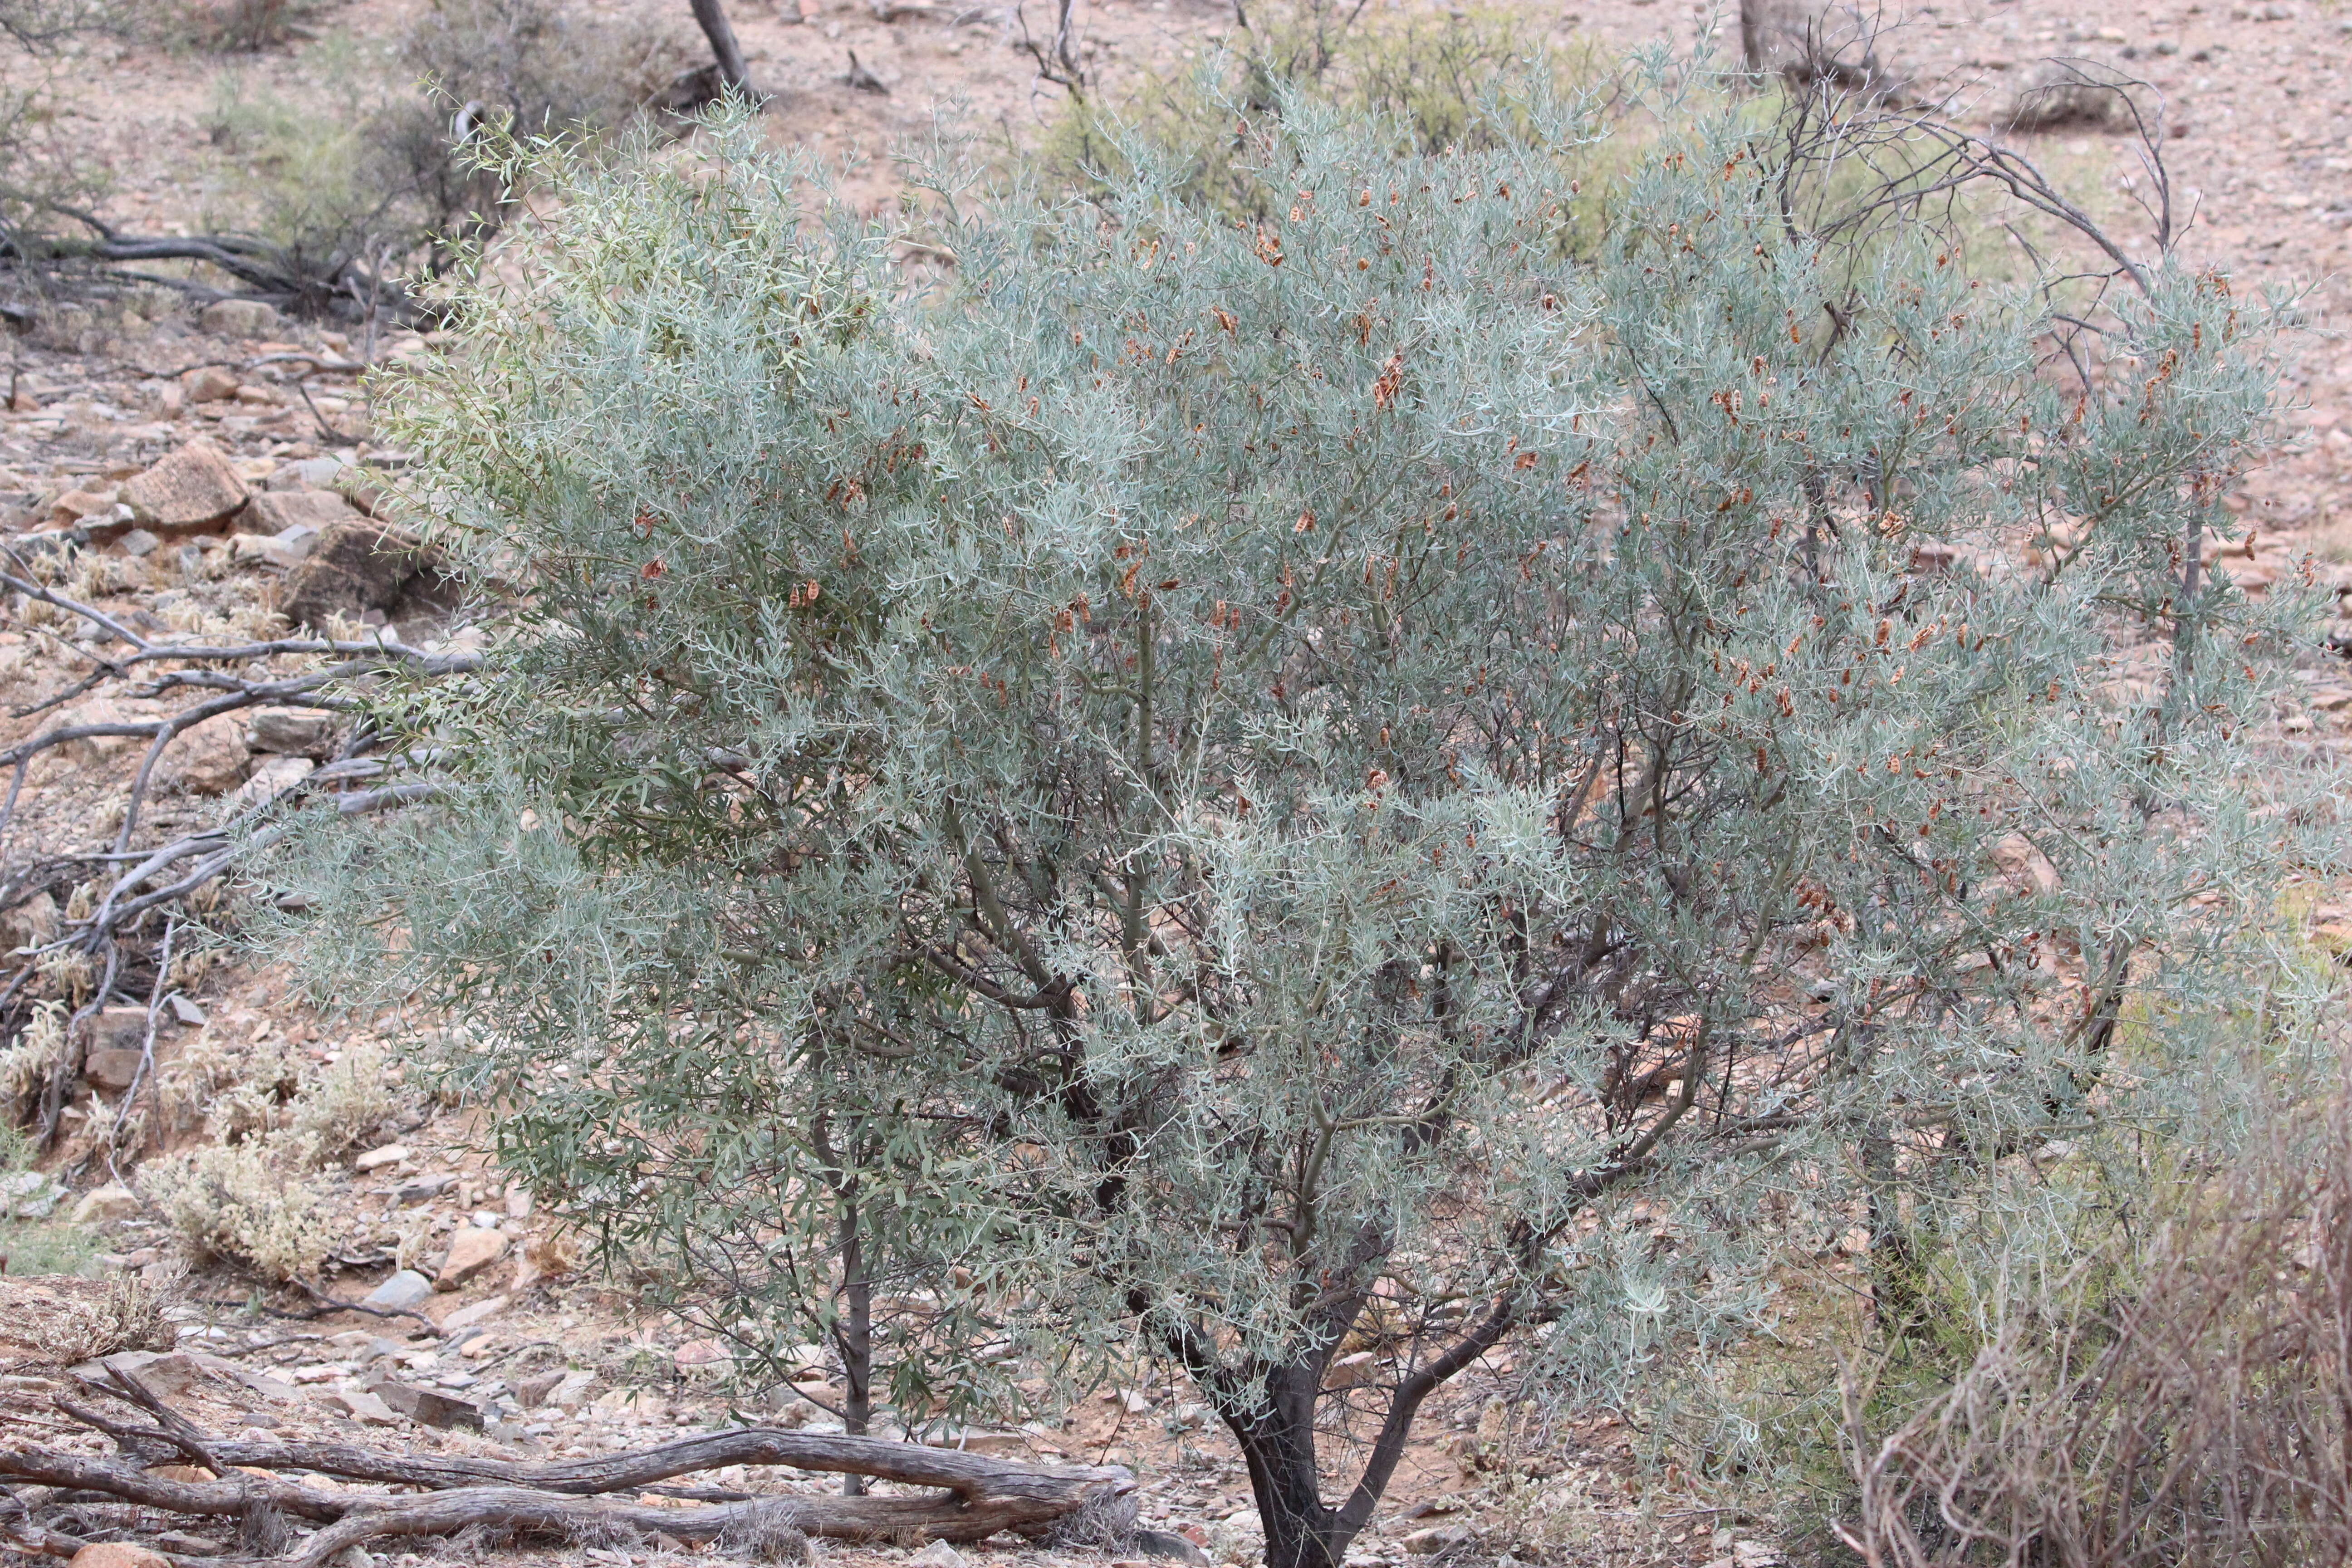 Image of bramble acacia